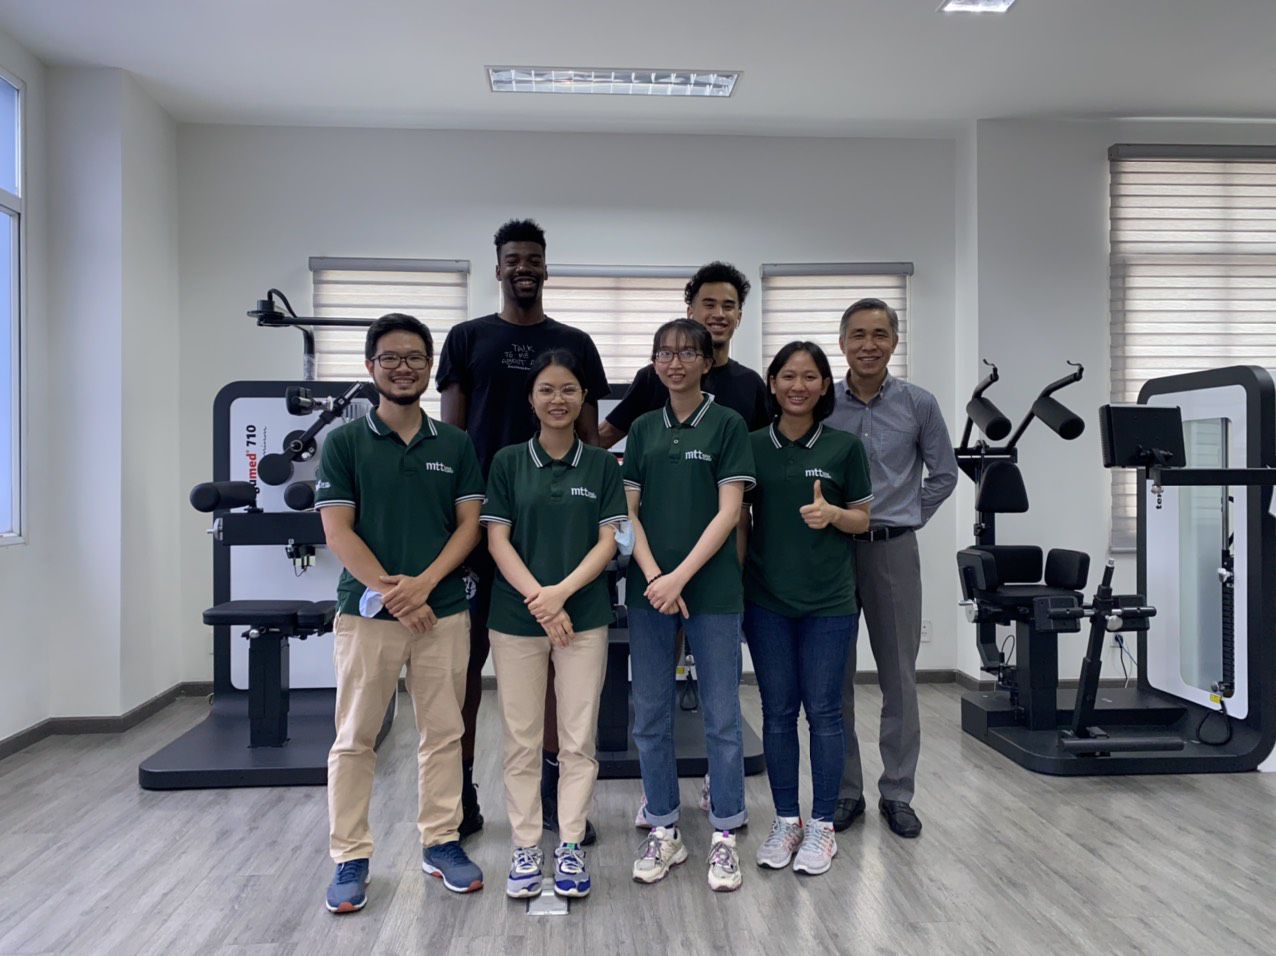 Tròn 1 tuần thực hiện chương trình chăm sóc sức khỏe cho các đoàn vận động viên bóng rổ chuẩn bị tham dự mùa giải bóng rổ chuyên nghiệp Việt Nam từ ngày 15/10/2020 đến ngày 17/12/2020